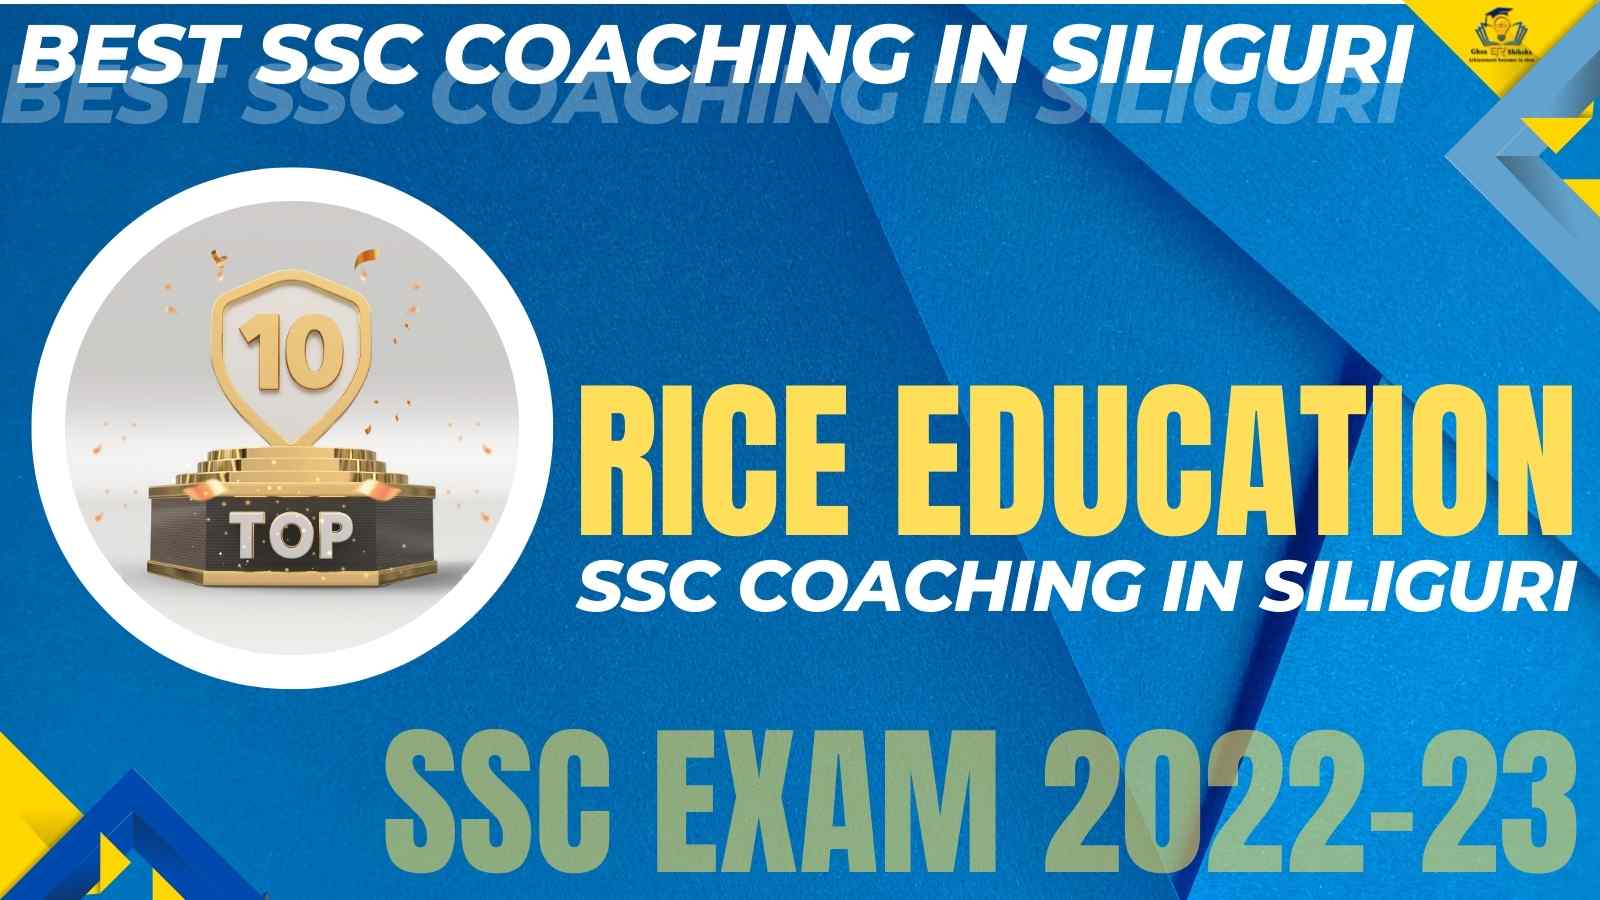 Best SSC Coaching In Siliguri